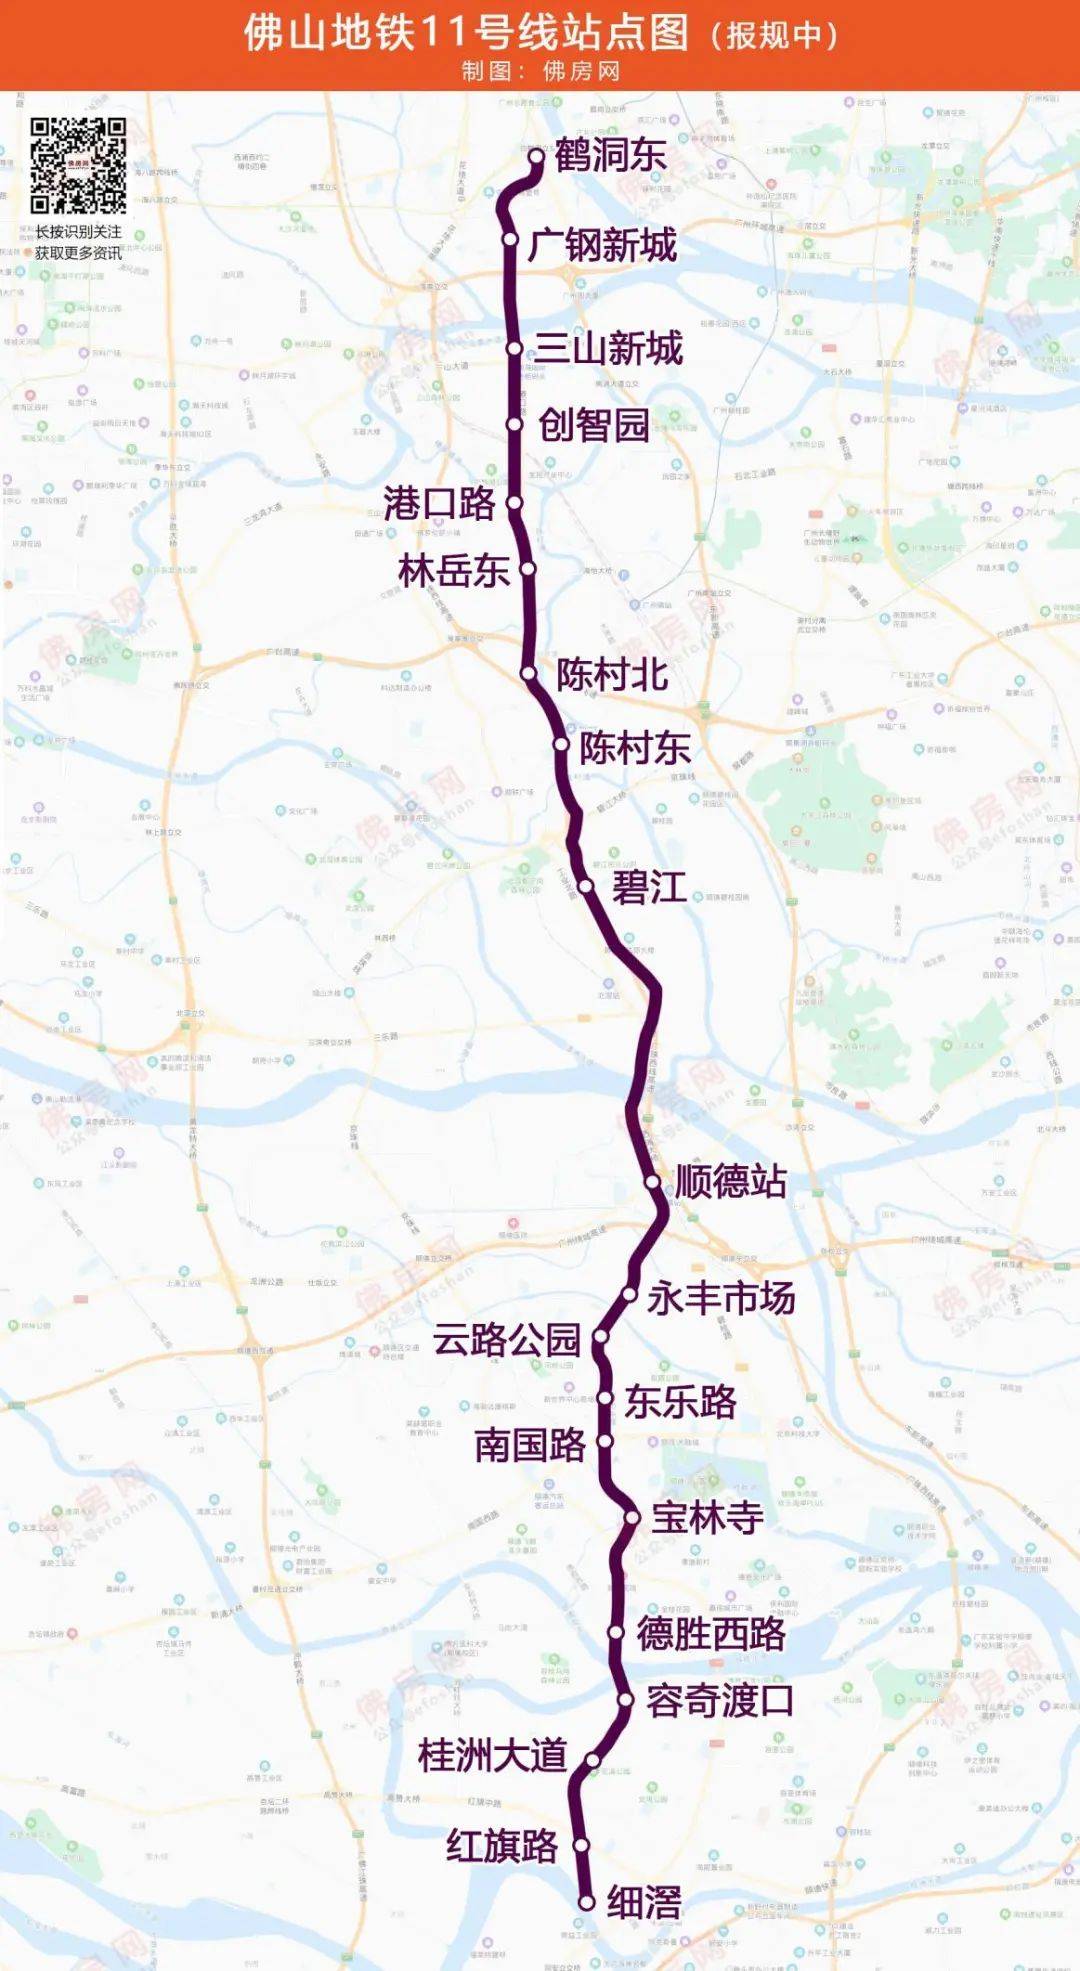 在佛山新一轮获批的地铁规划中, 11号线将在陈村镇设立2个站点, 4号线